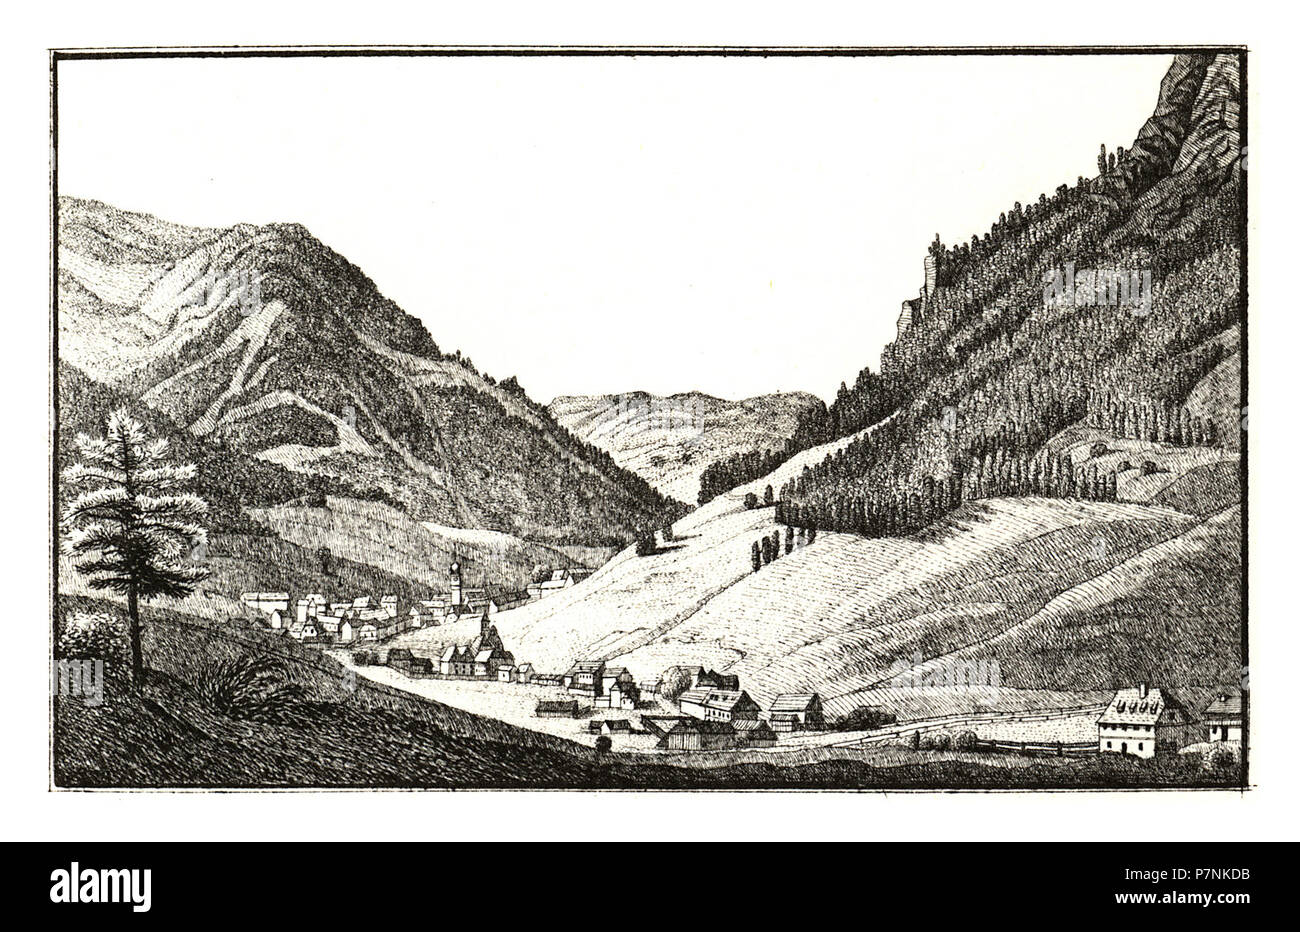 319 Vordernberg -J.F.Kaiser Lithografirte Ansichten der Steiermark 1830. Stock Photo